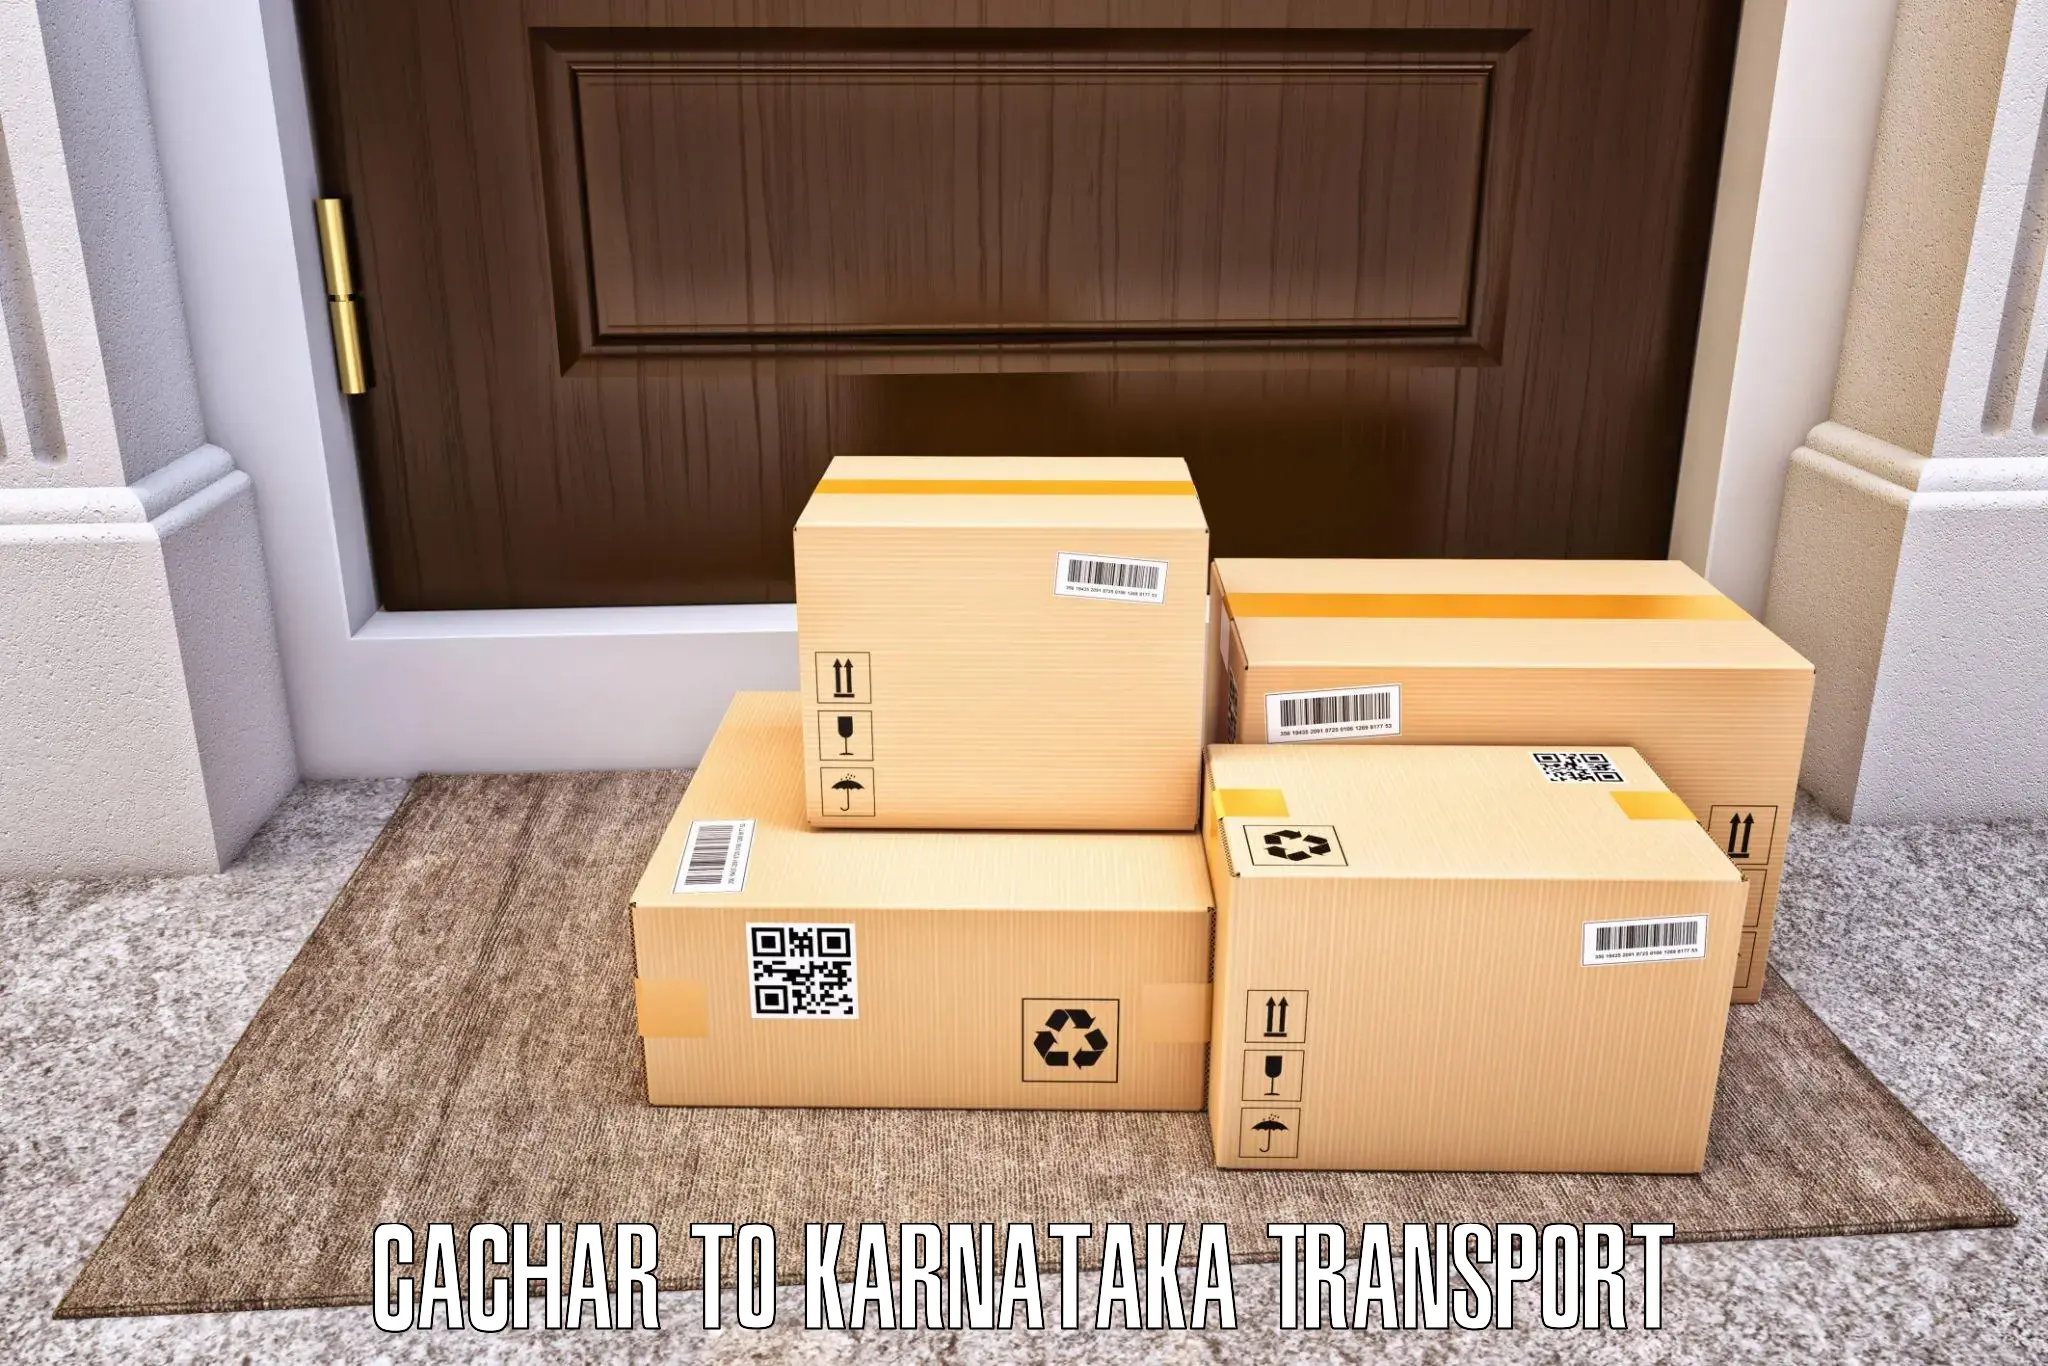 Bike shipping service Cachar to Gauribidanur